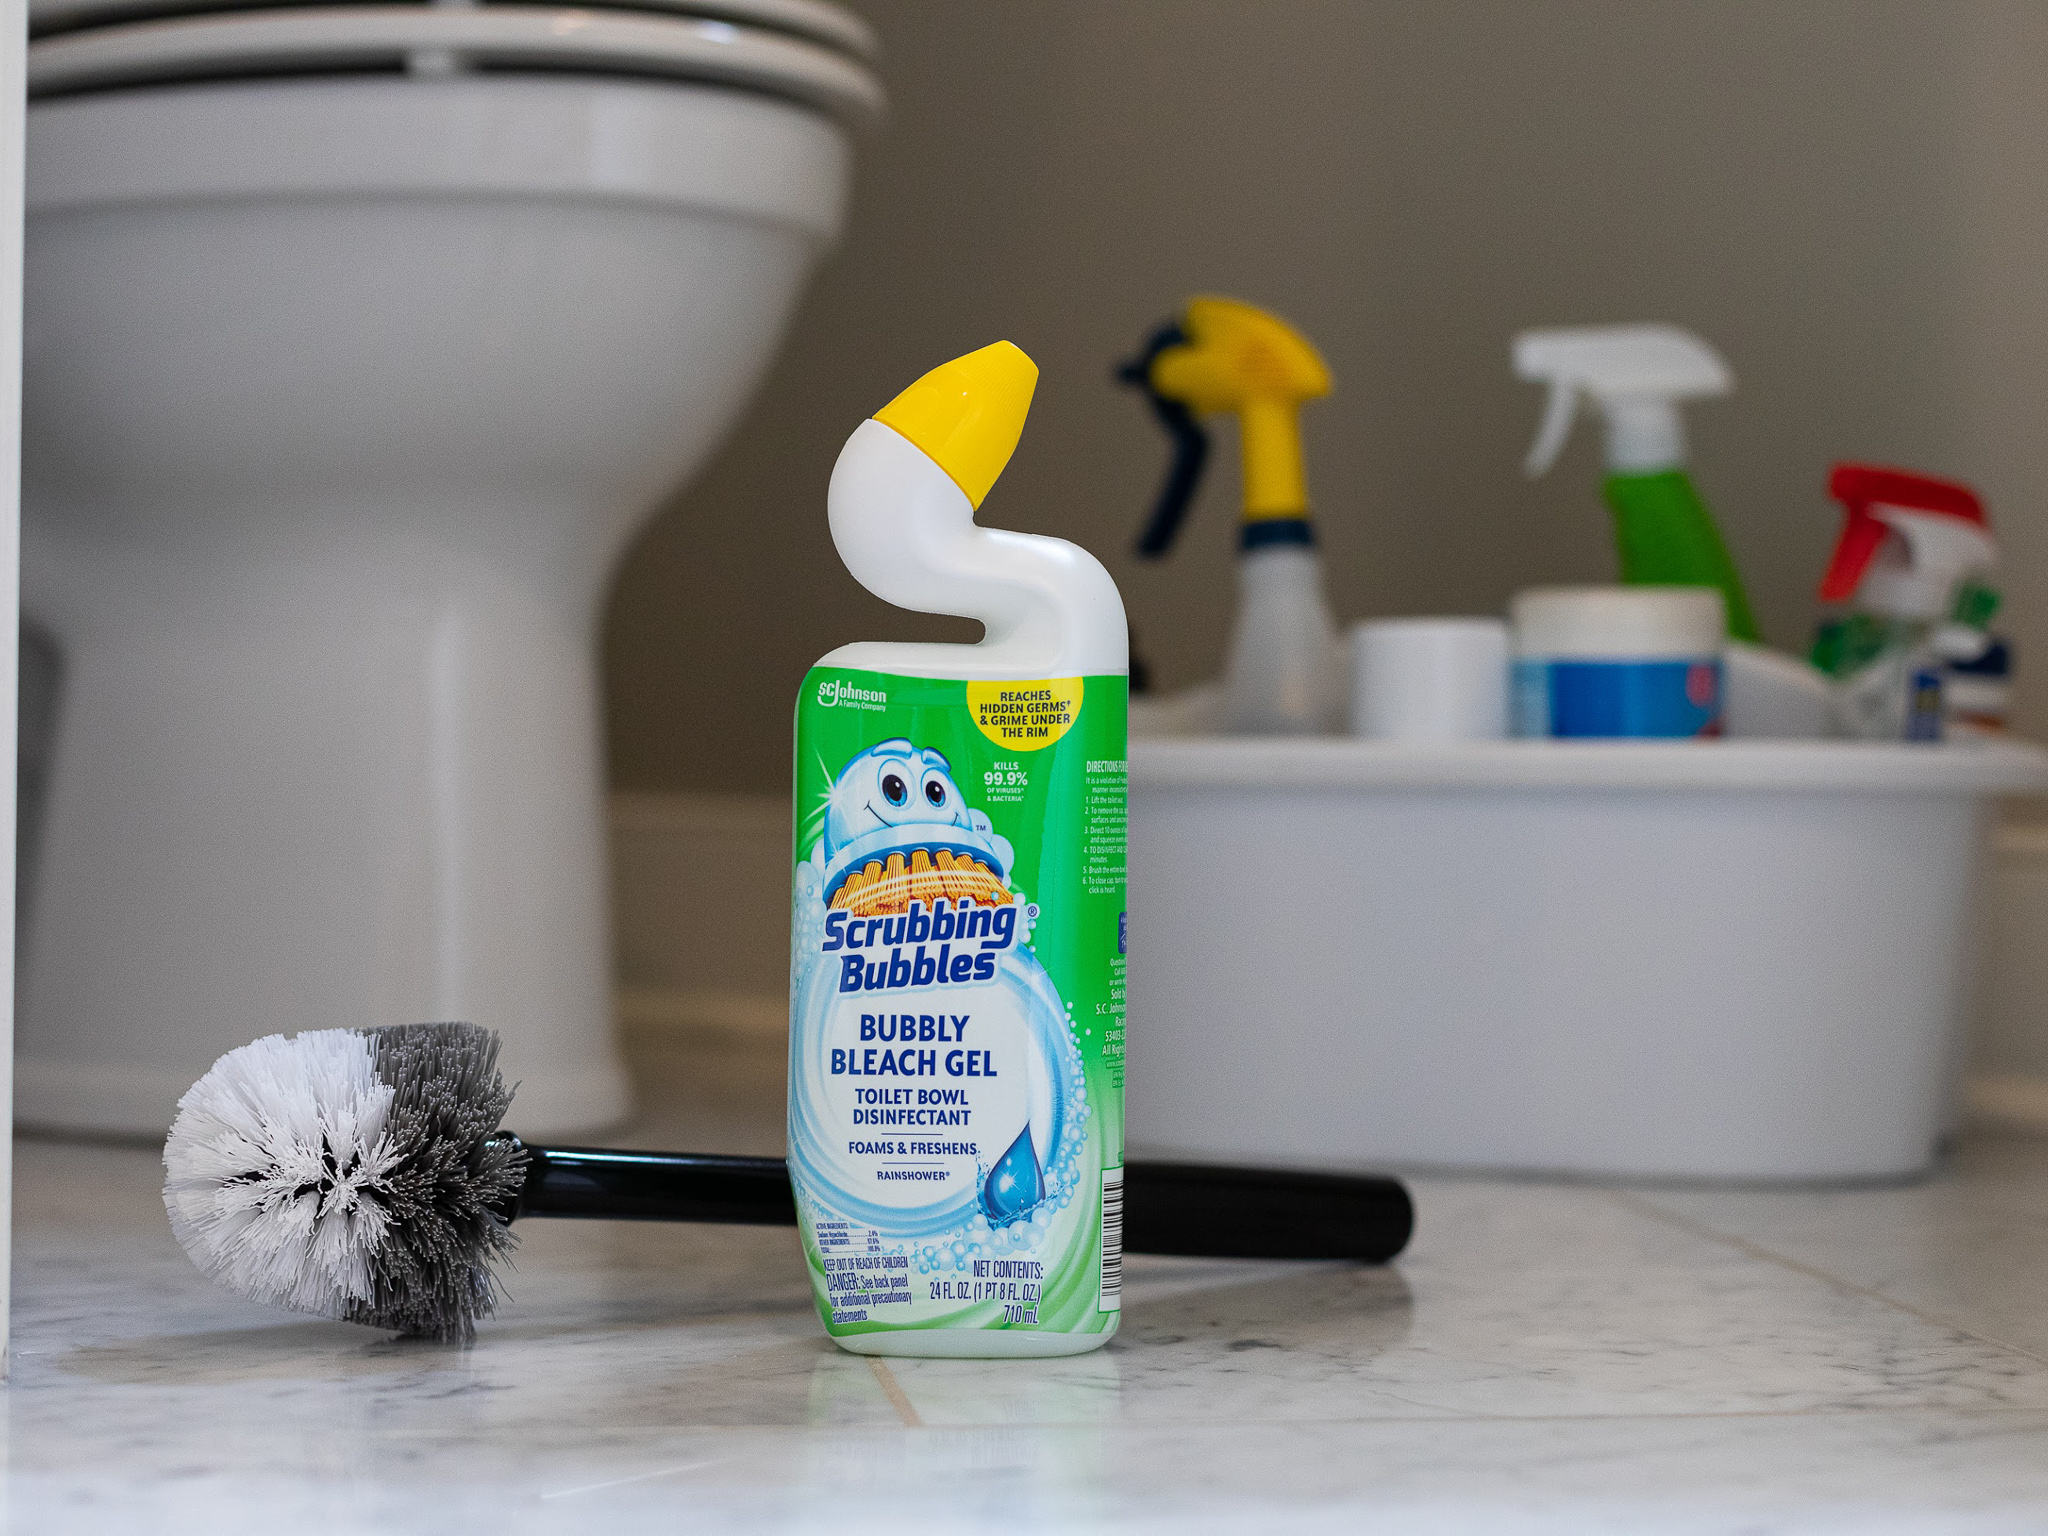 Scrubbing Bubbles Toilet Bowl Cleaner Just 75¢ At Publix - iHeartPublix